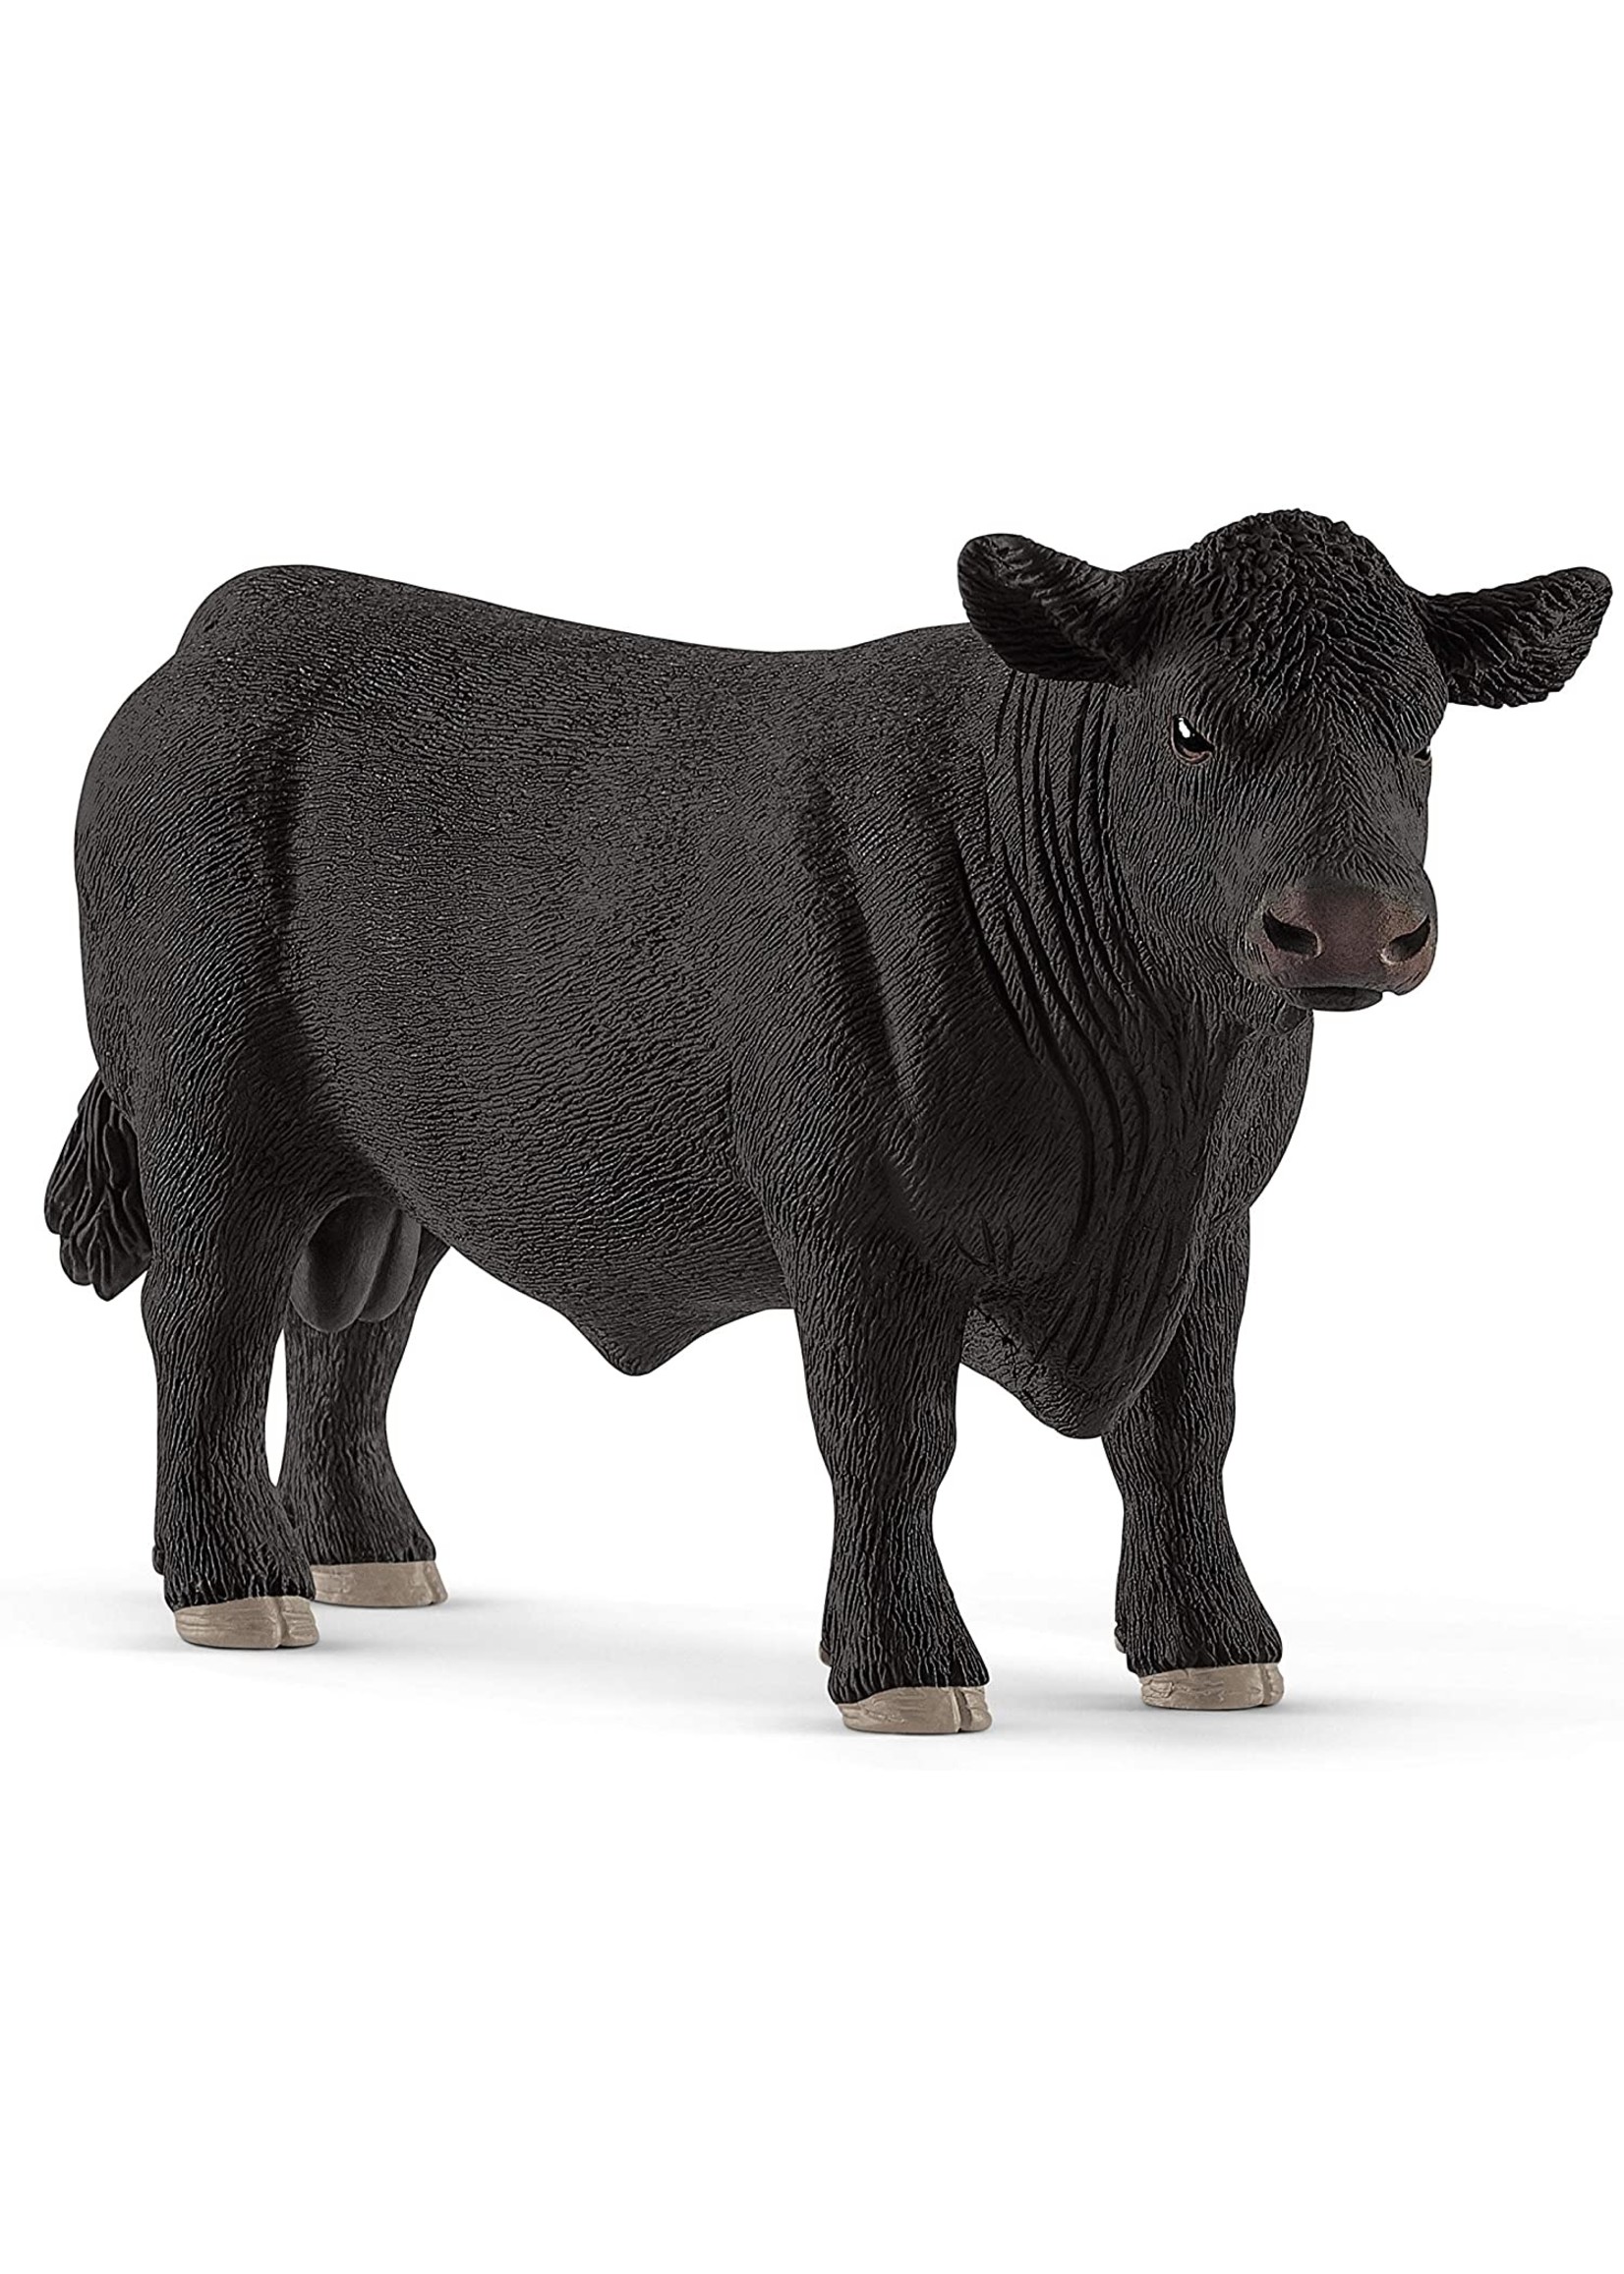 Schleich 13879 - Black Angus Bull